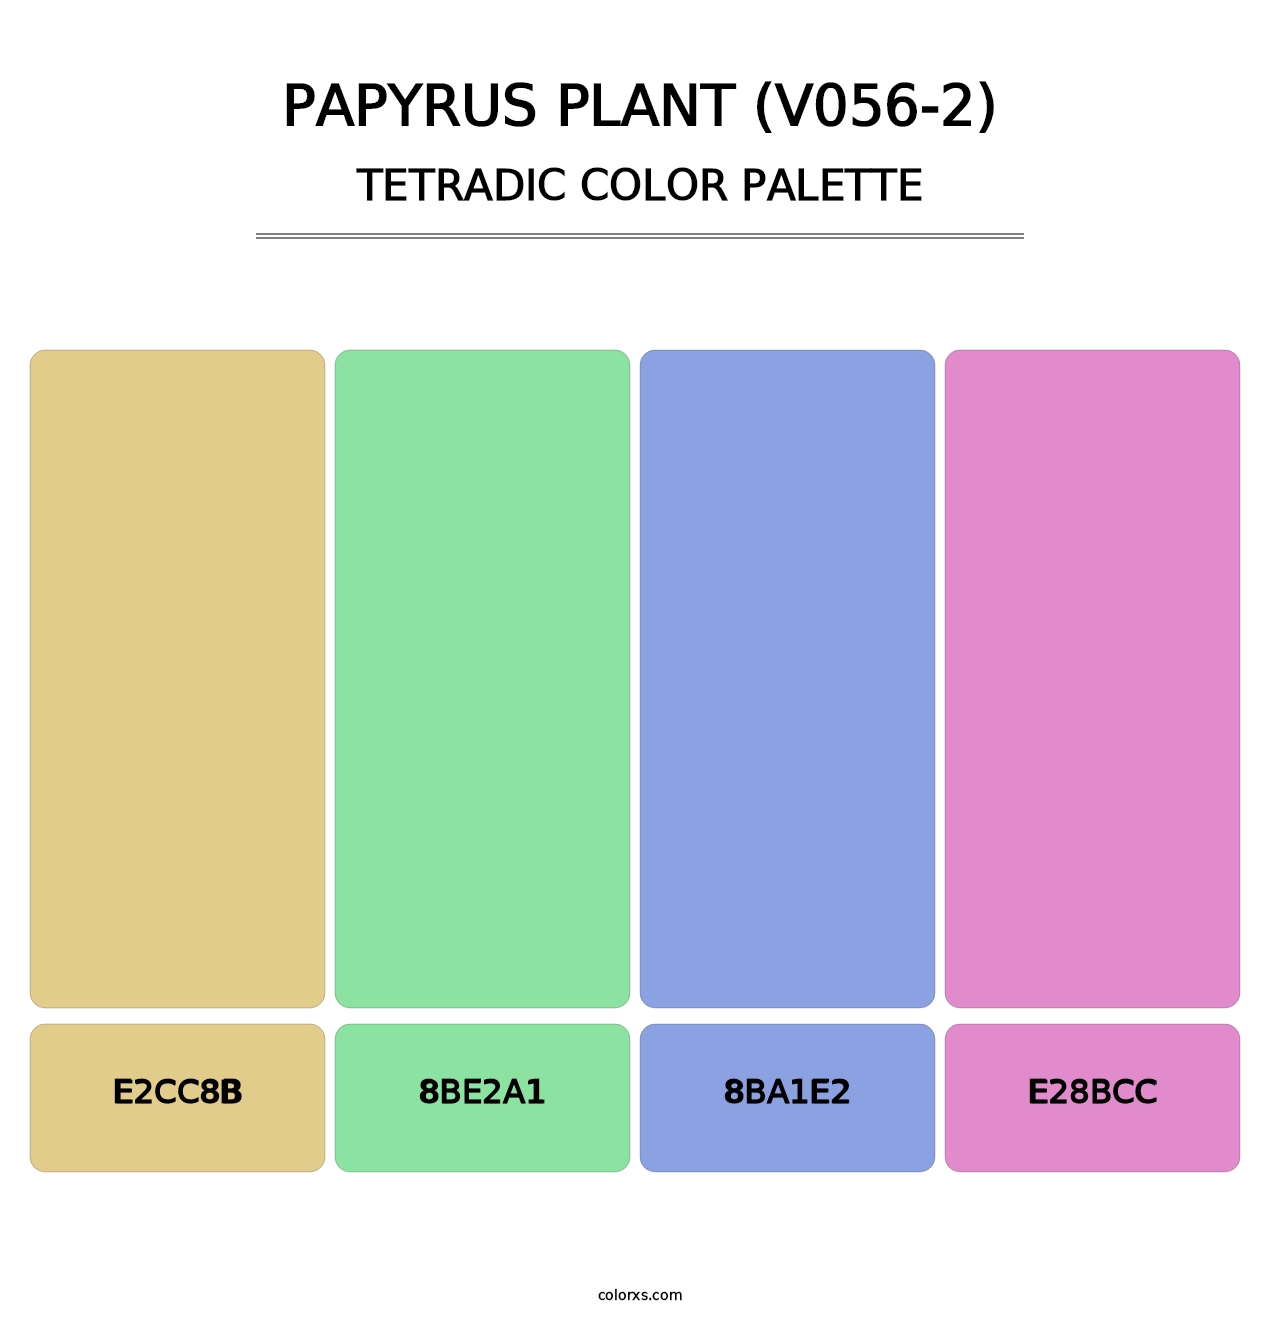 Papyrus Plant (V056-2) - Tetradic Color Palette